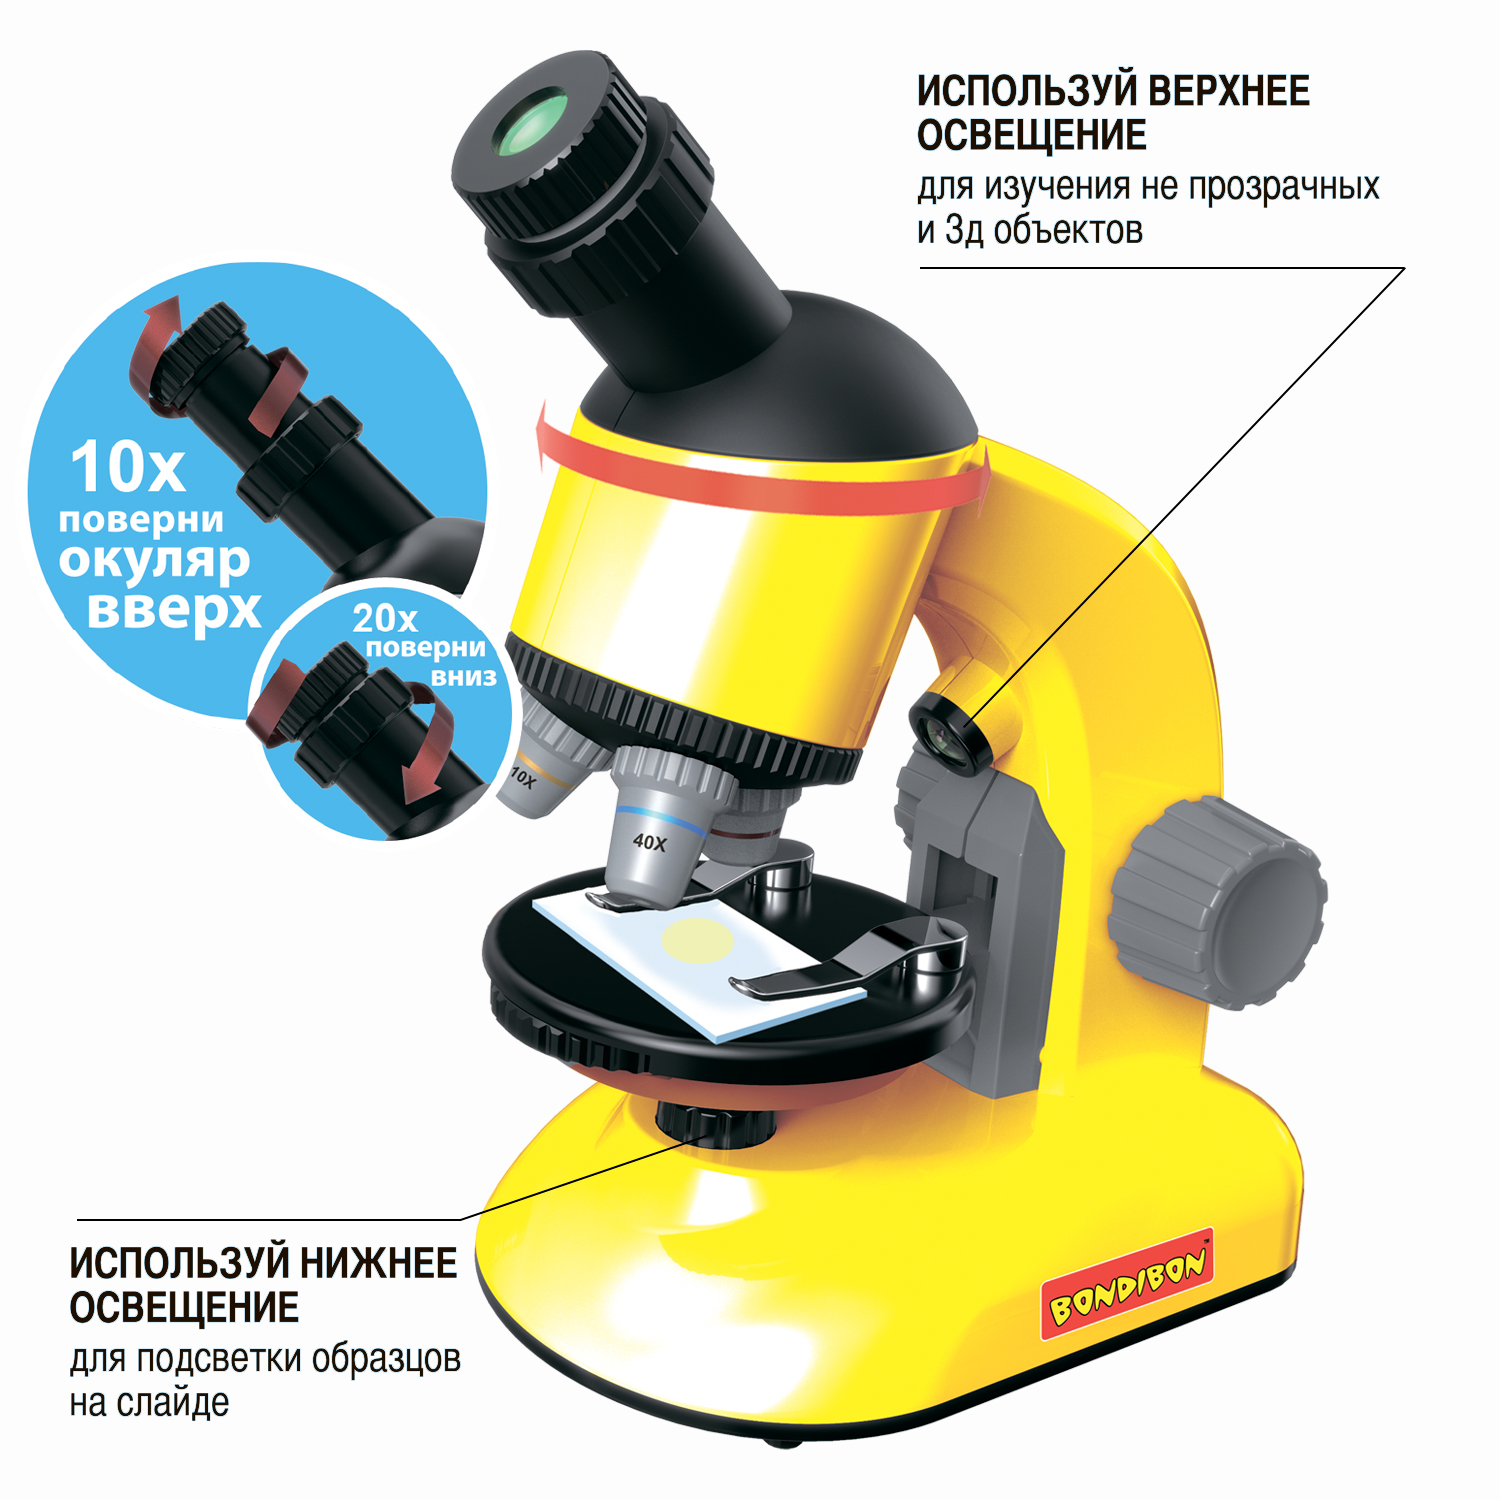 Набор для опытов BONDIBON развивающий обучающий Микроскоп с поворотным окуляром и набором аксессуаров - фото 4